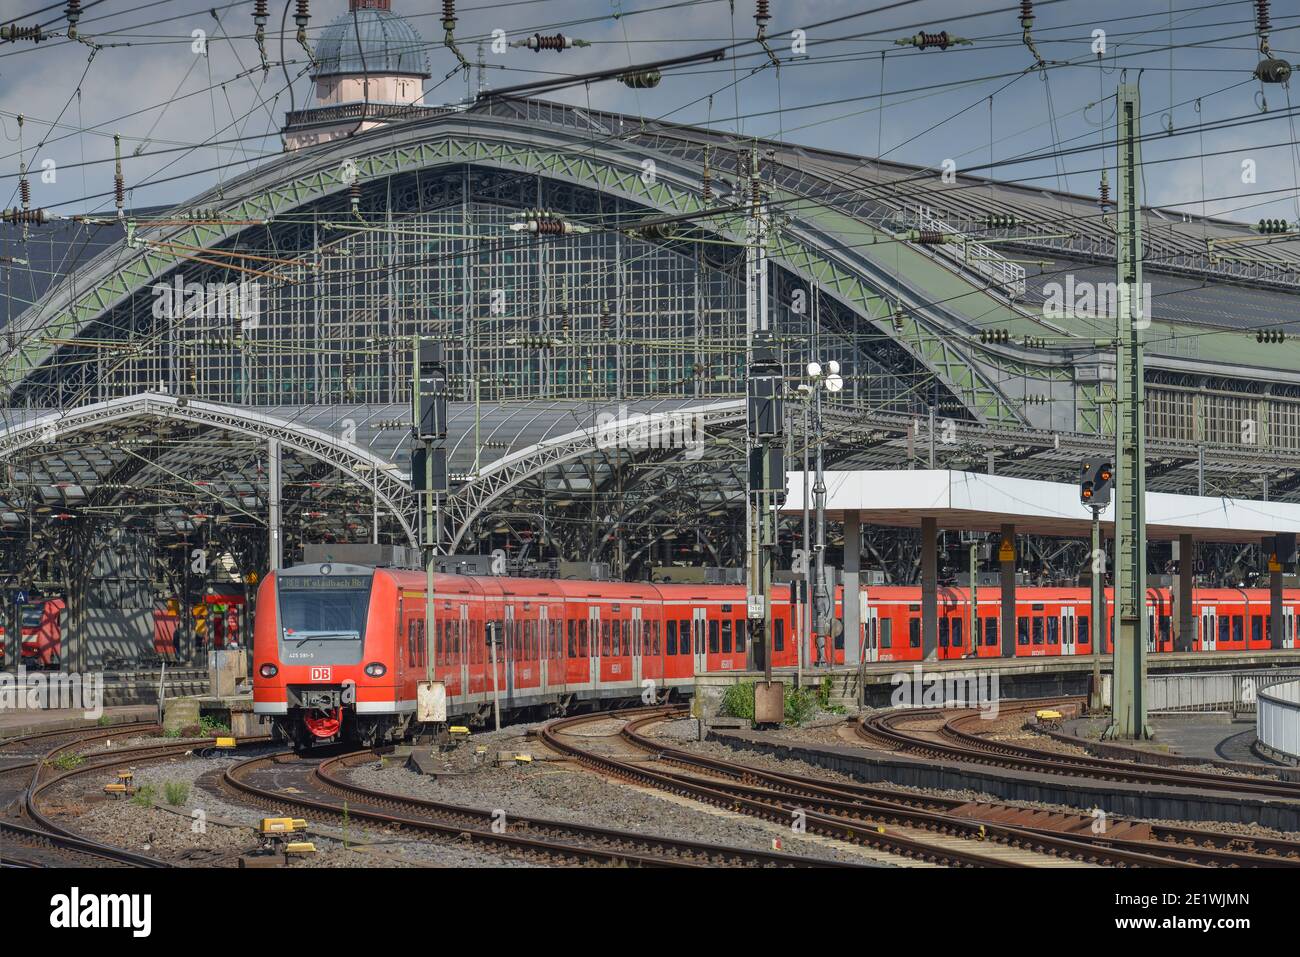 Regionalbahn, Einfahrt zum Hauptbahnhof, Koeln, Nordrhein-Westfalen, Deutschland Stock Photo